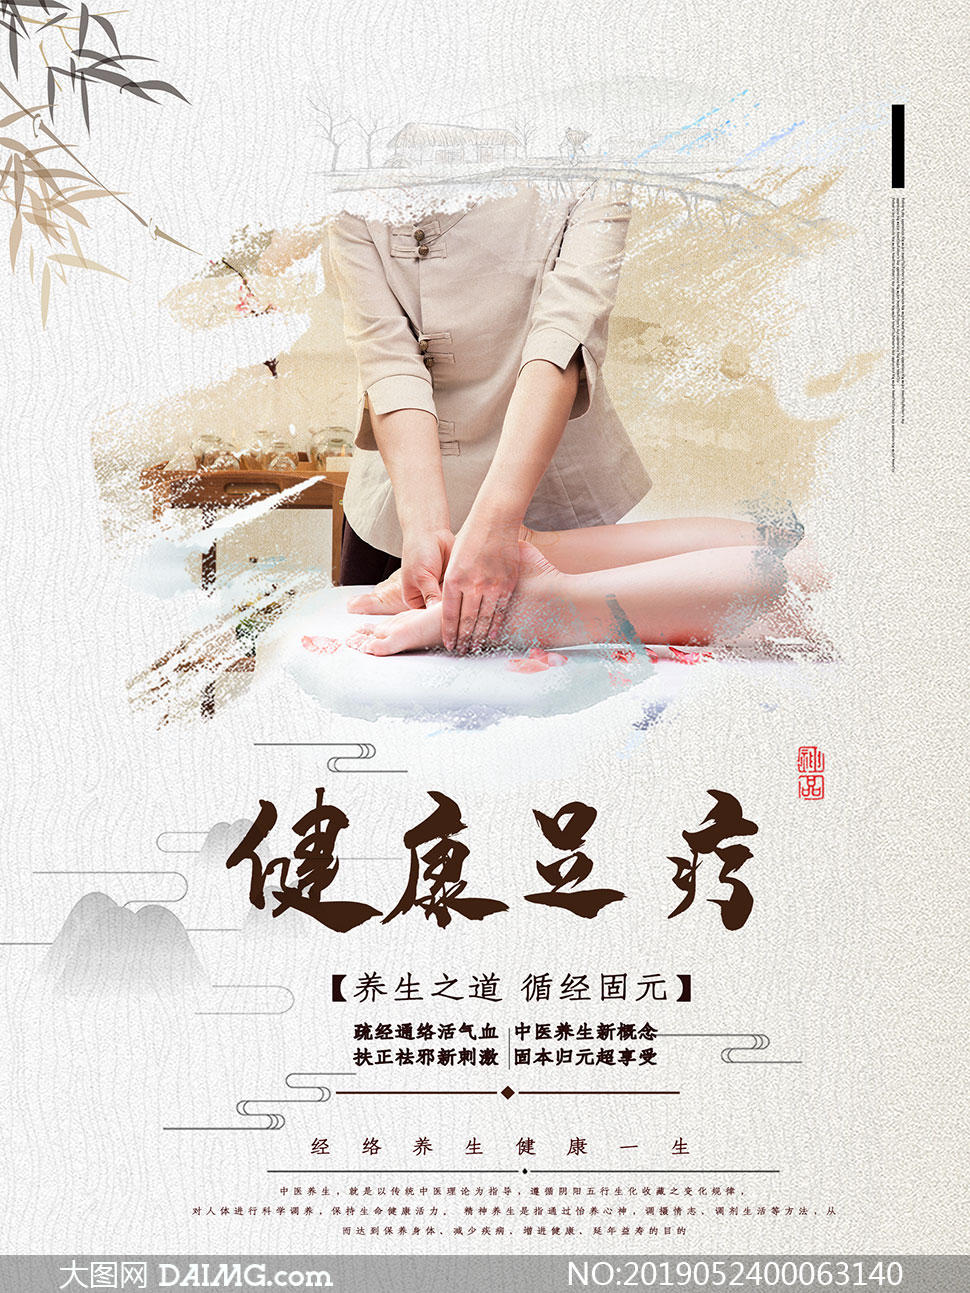 中国风养生足疗海报设计psd源文件